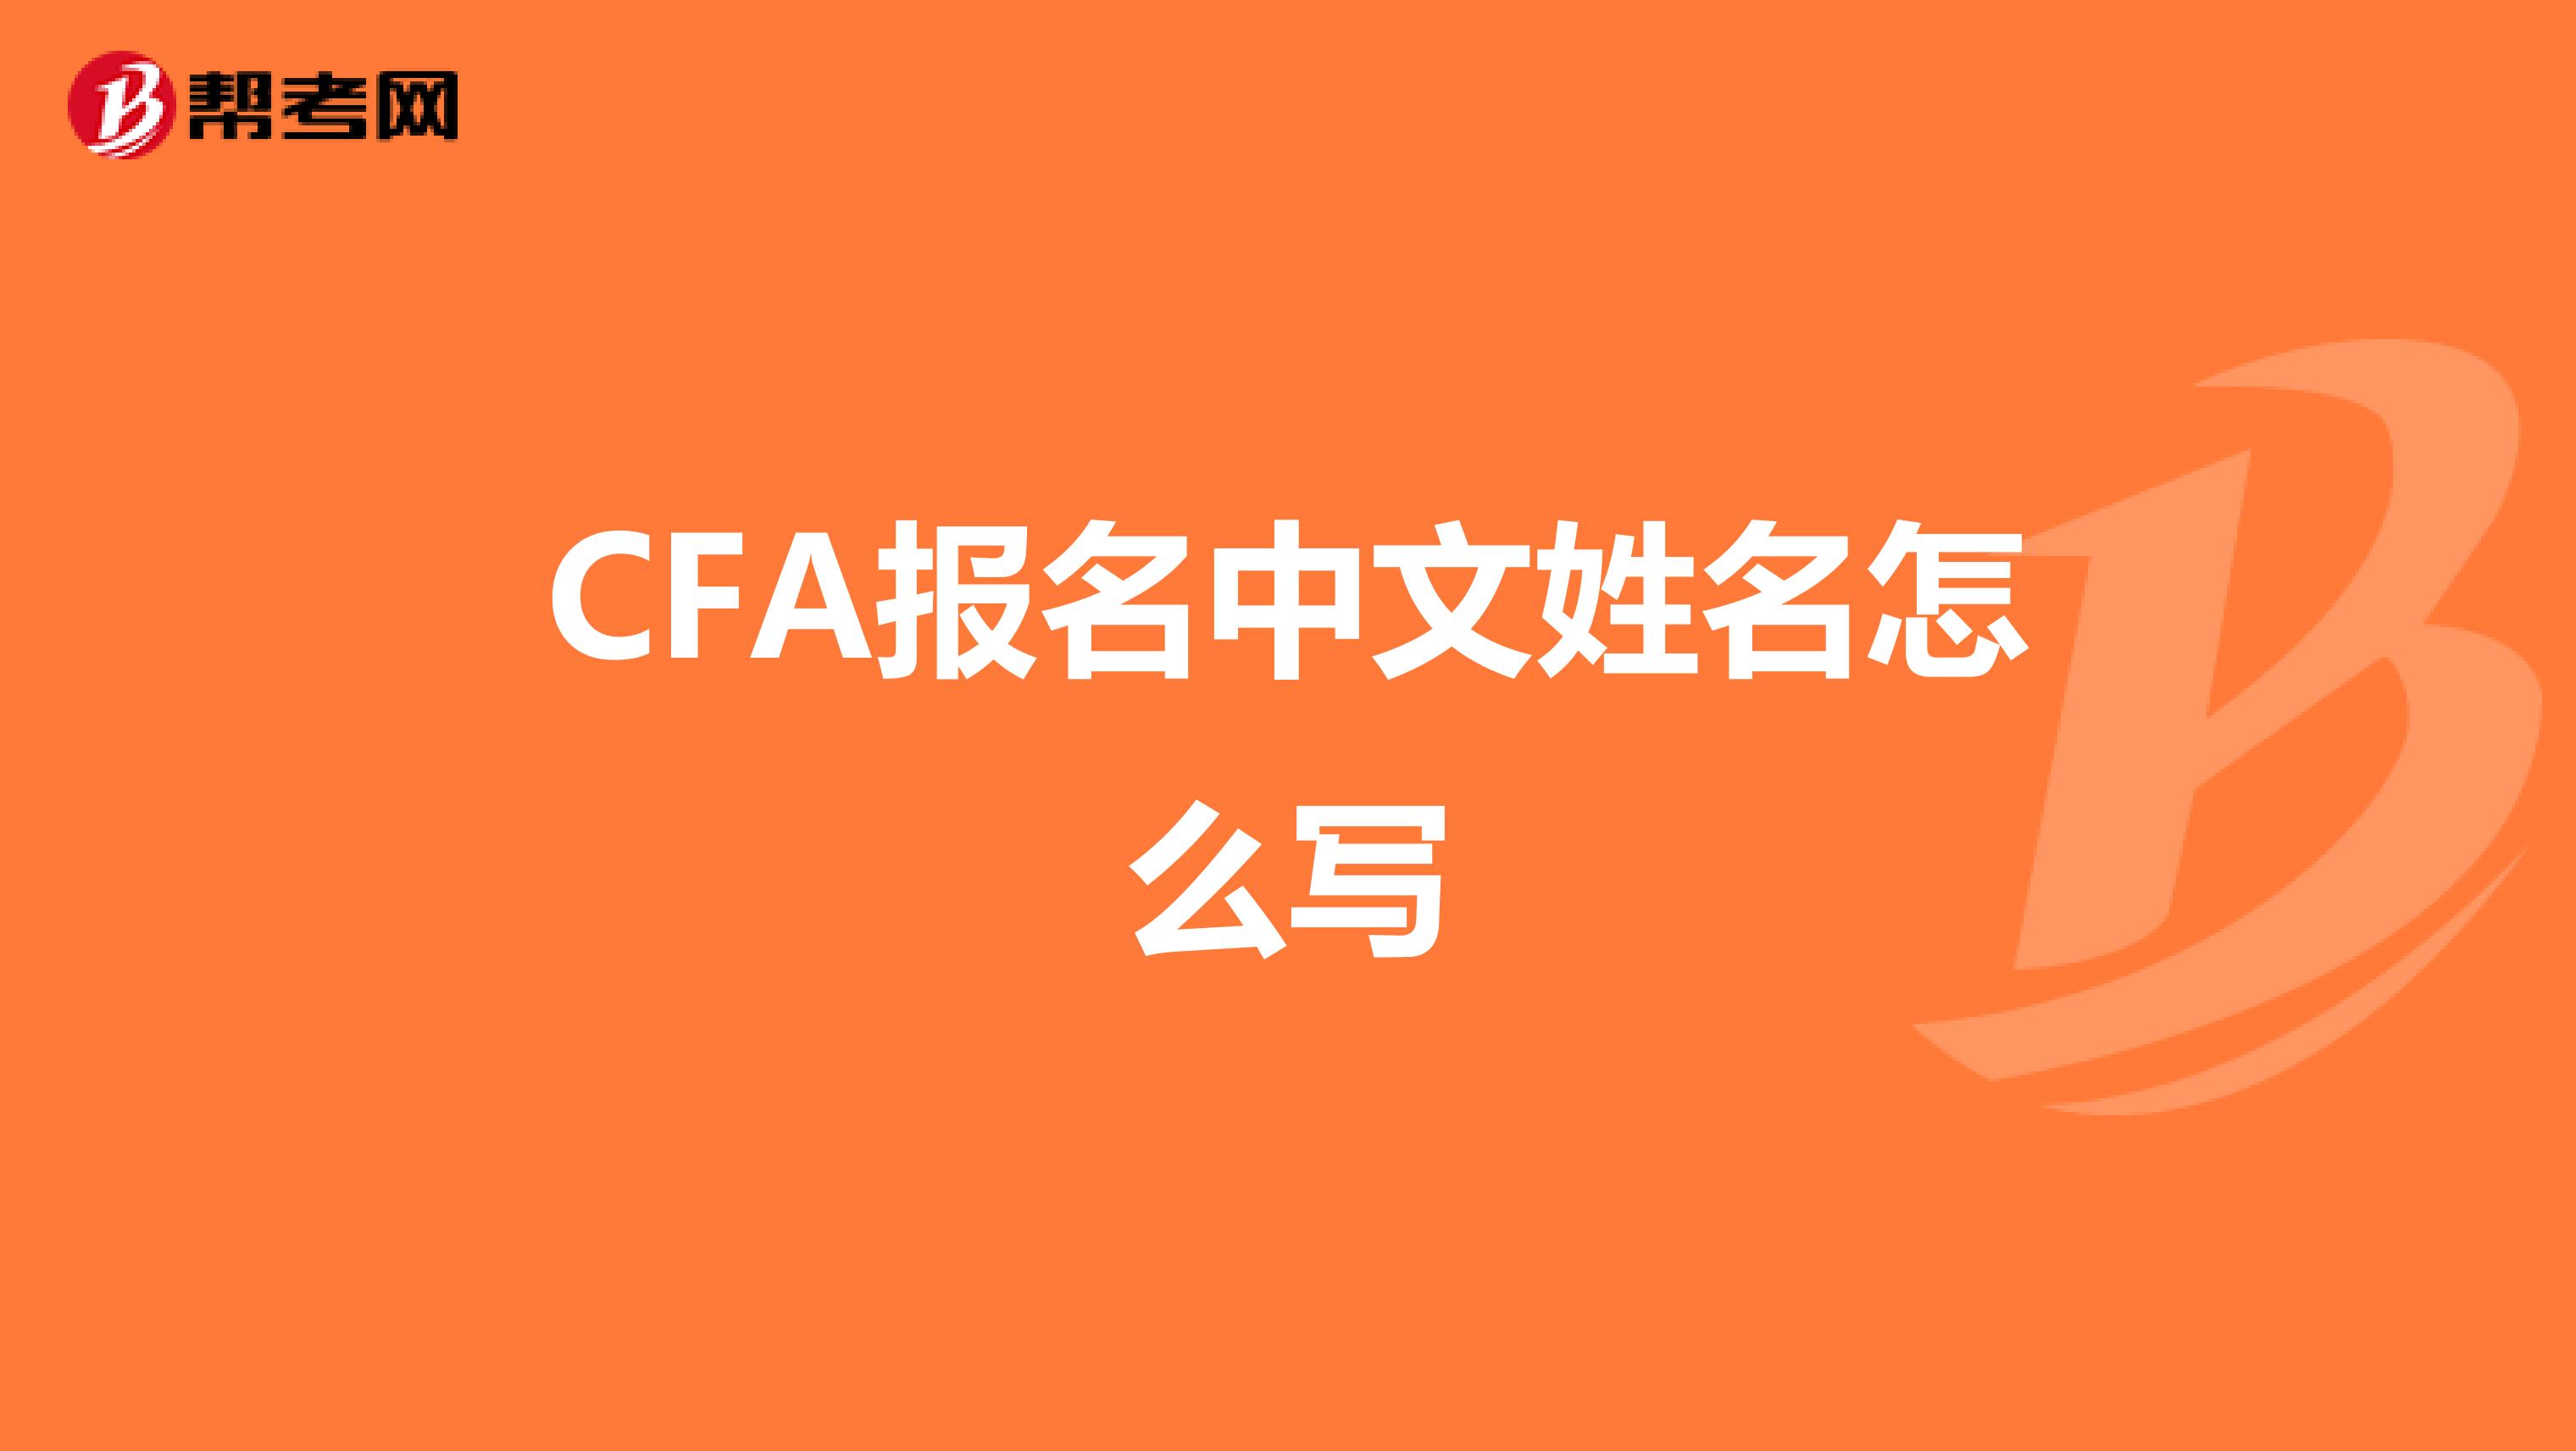 CFA报名中文姓名怎么写